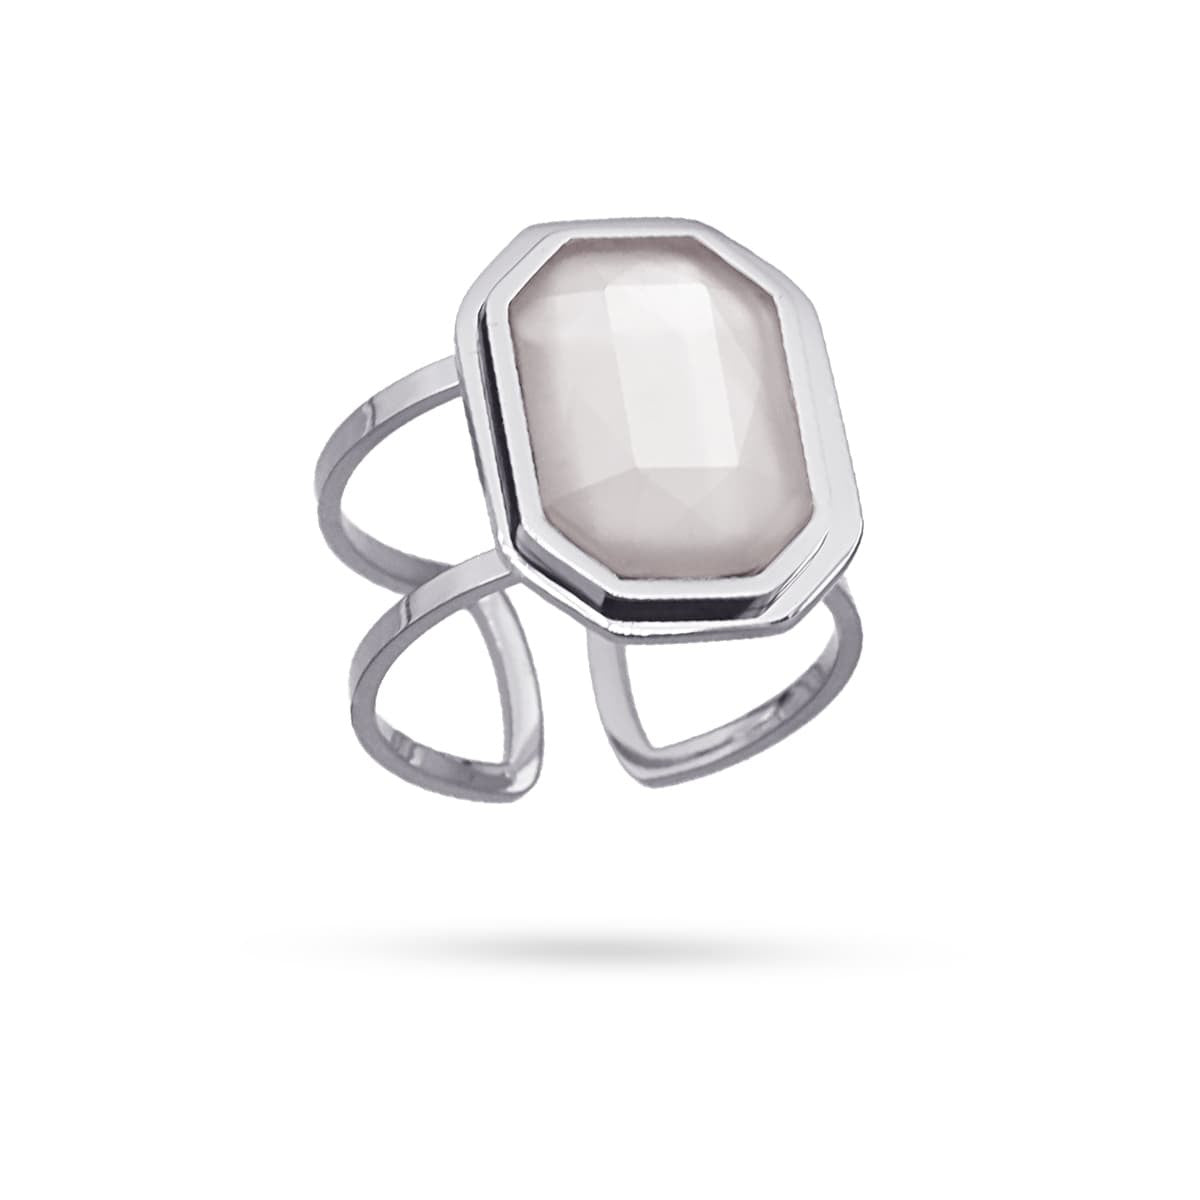 Maxi anillo cadena eslabones acero quirúrgico plástico reciclado piedra coloreada gris anartxy